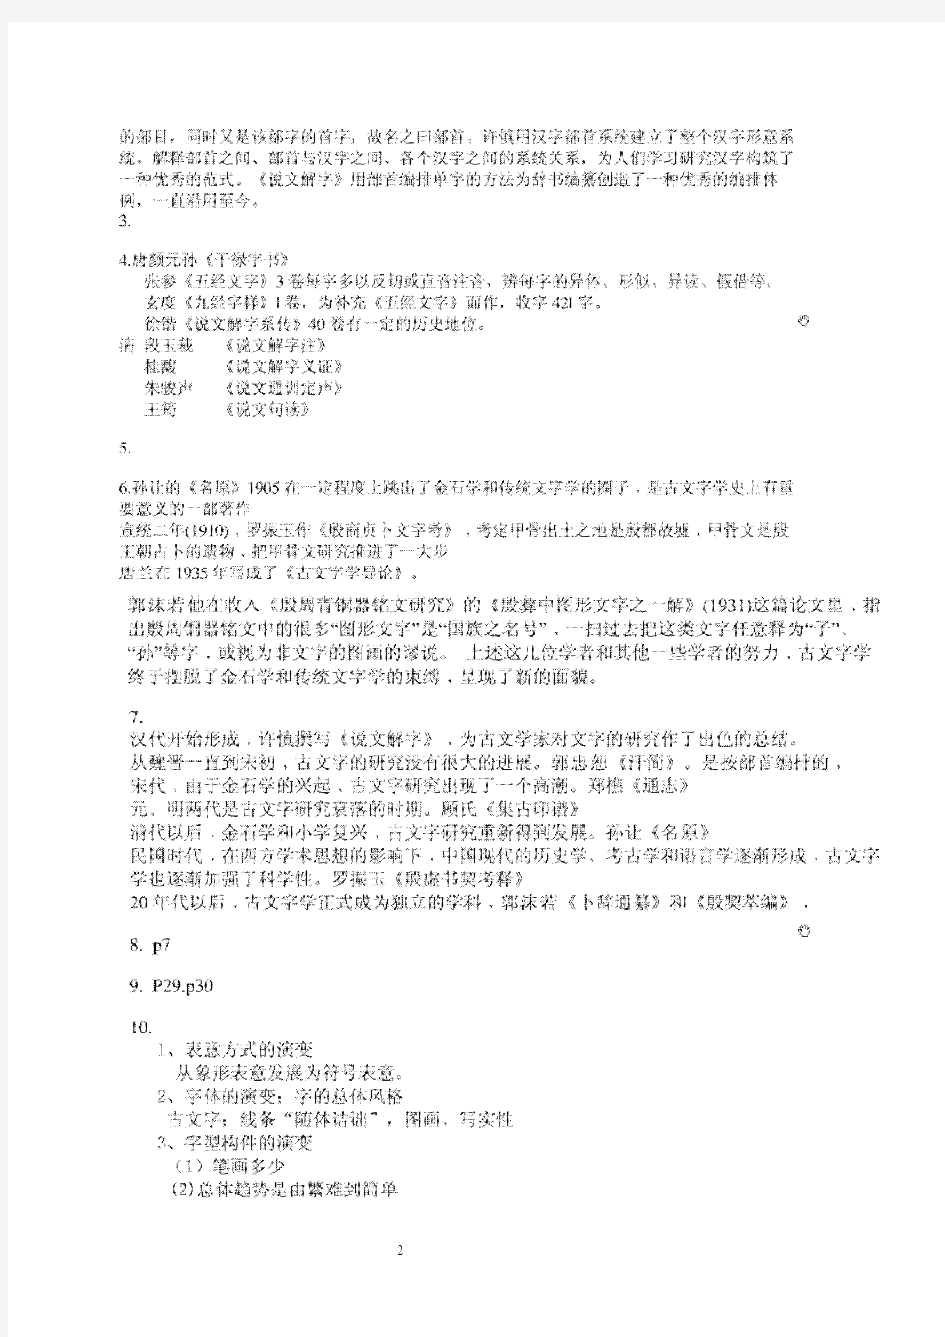 古代汉语专题形成性考核作业答案2010年汉语言文学电大